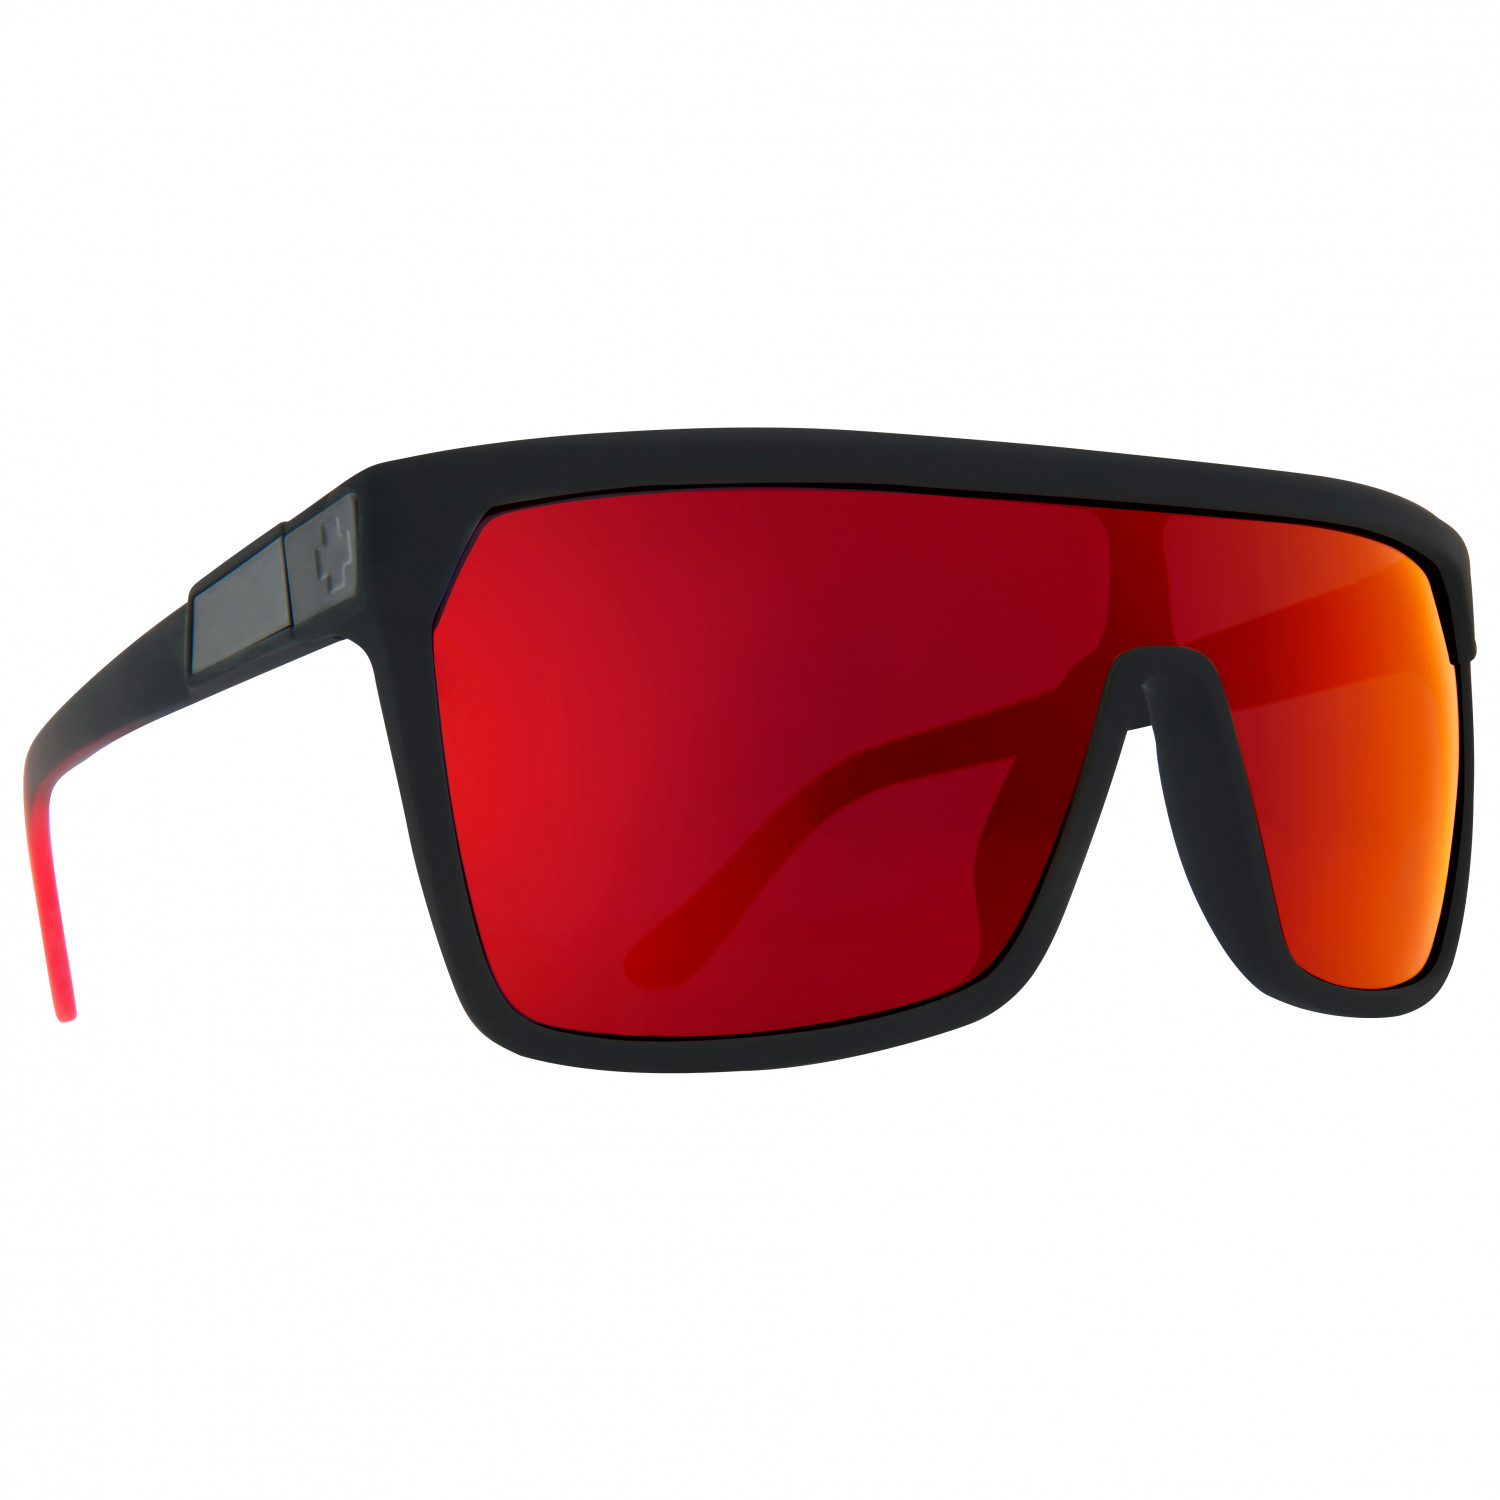 flynn vince red war Солнцезащитные очки Spy+ Flynn S3 (VLT 15%), цвет Soft Matte Black Red Fade